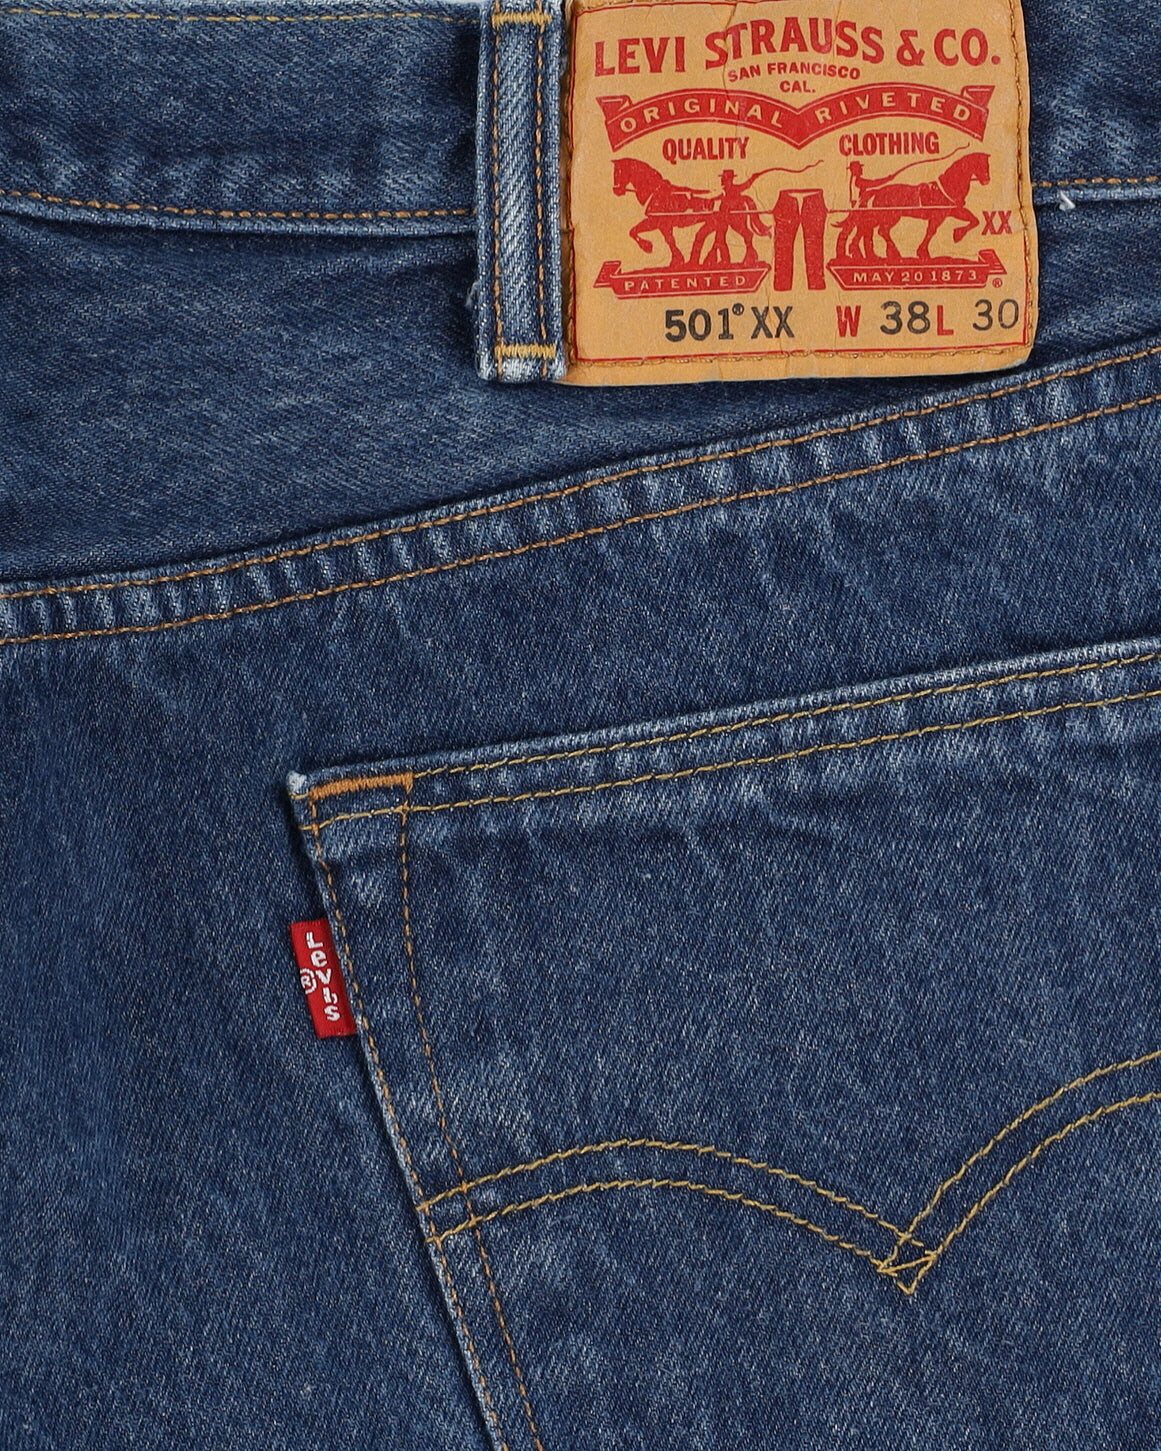 Levi's 501 Blue Jeans - W36 L28